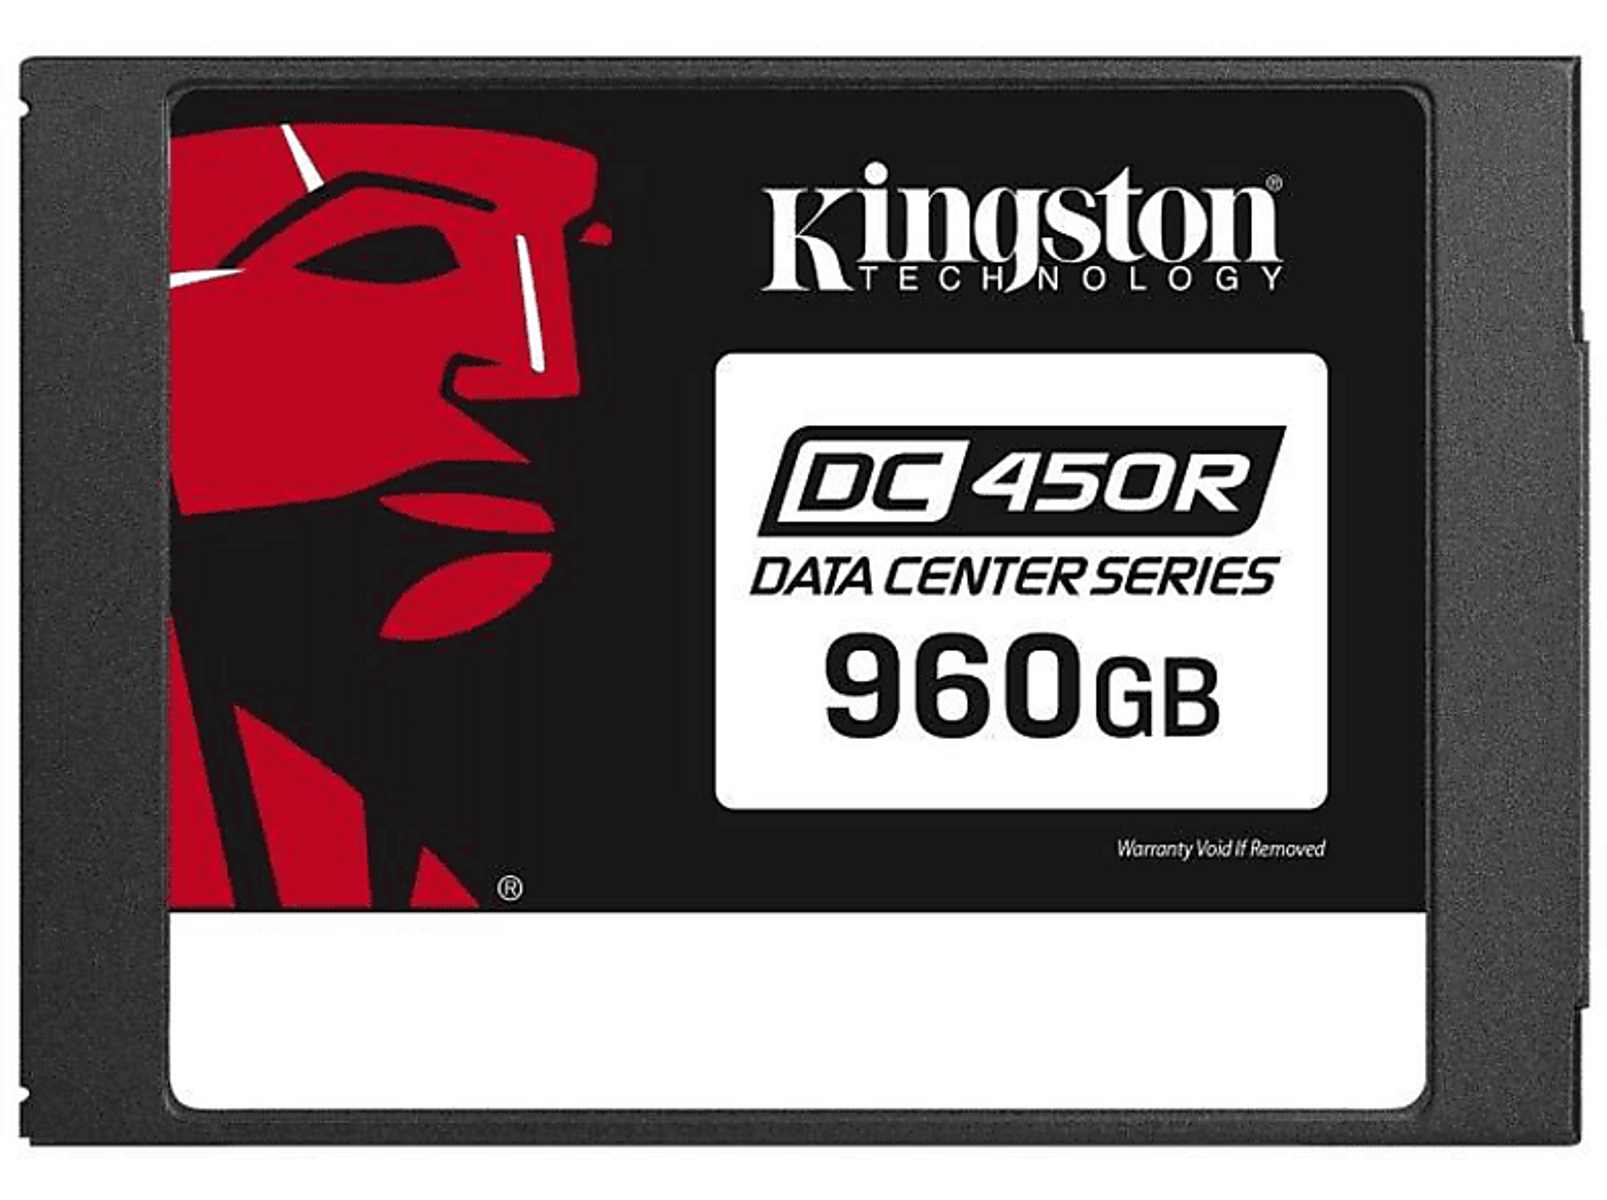 KINGSTON Kingston Data Center DC450R SATA - 6Gb/s, 960GB Zoll, SSD, GB, (SSD verschlüsselt), 960 2,5 intern intern